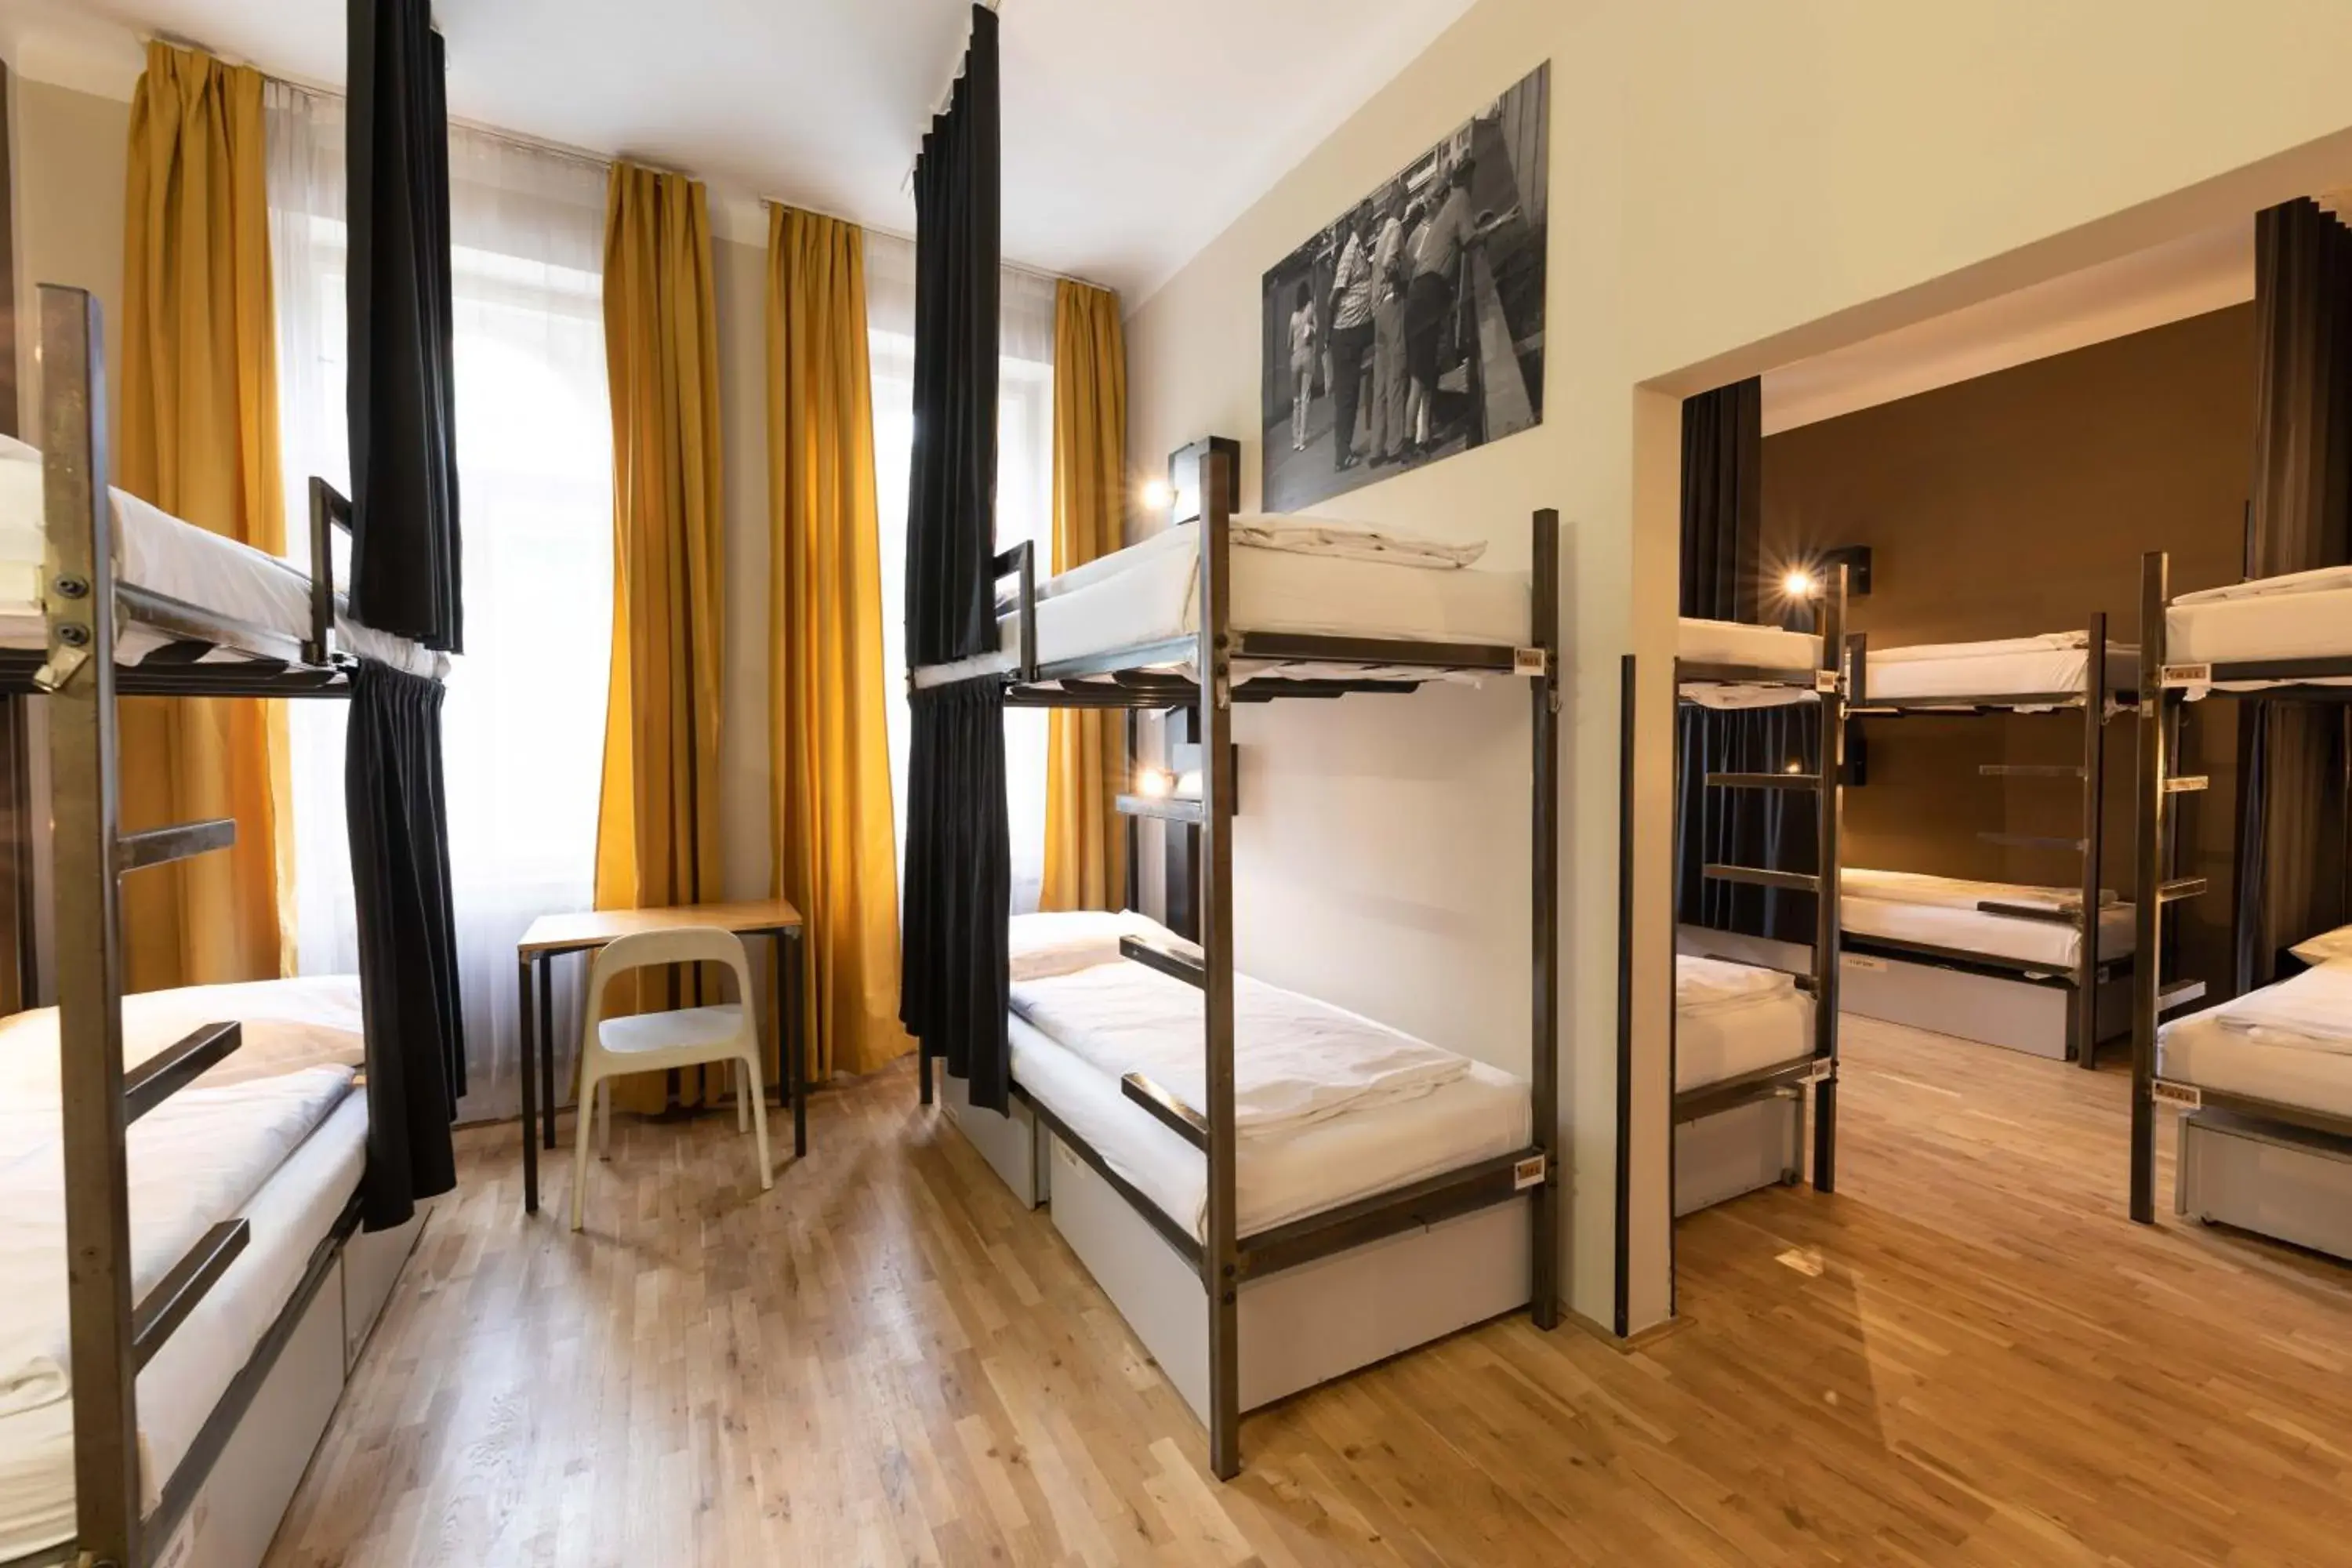 Bedroom, Bunk Bed in Czech Inn Hostel